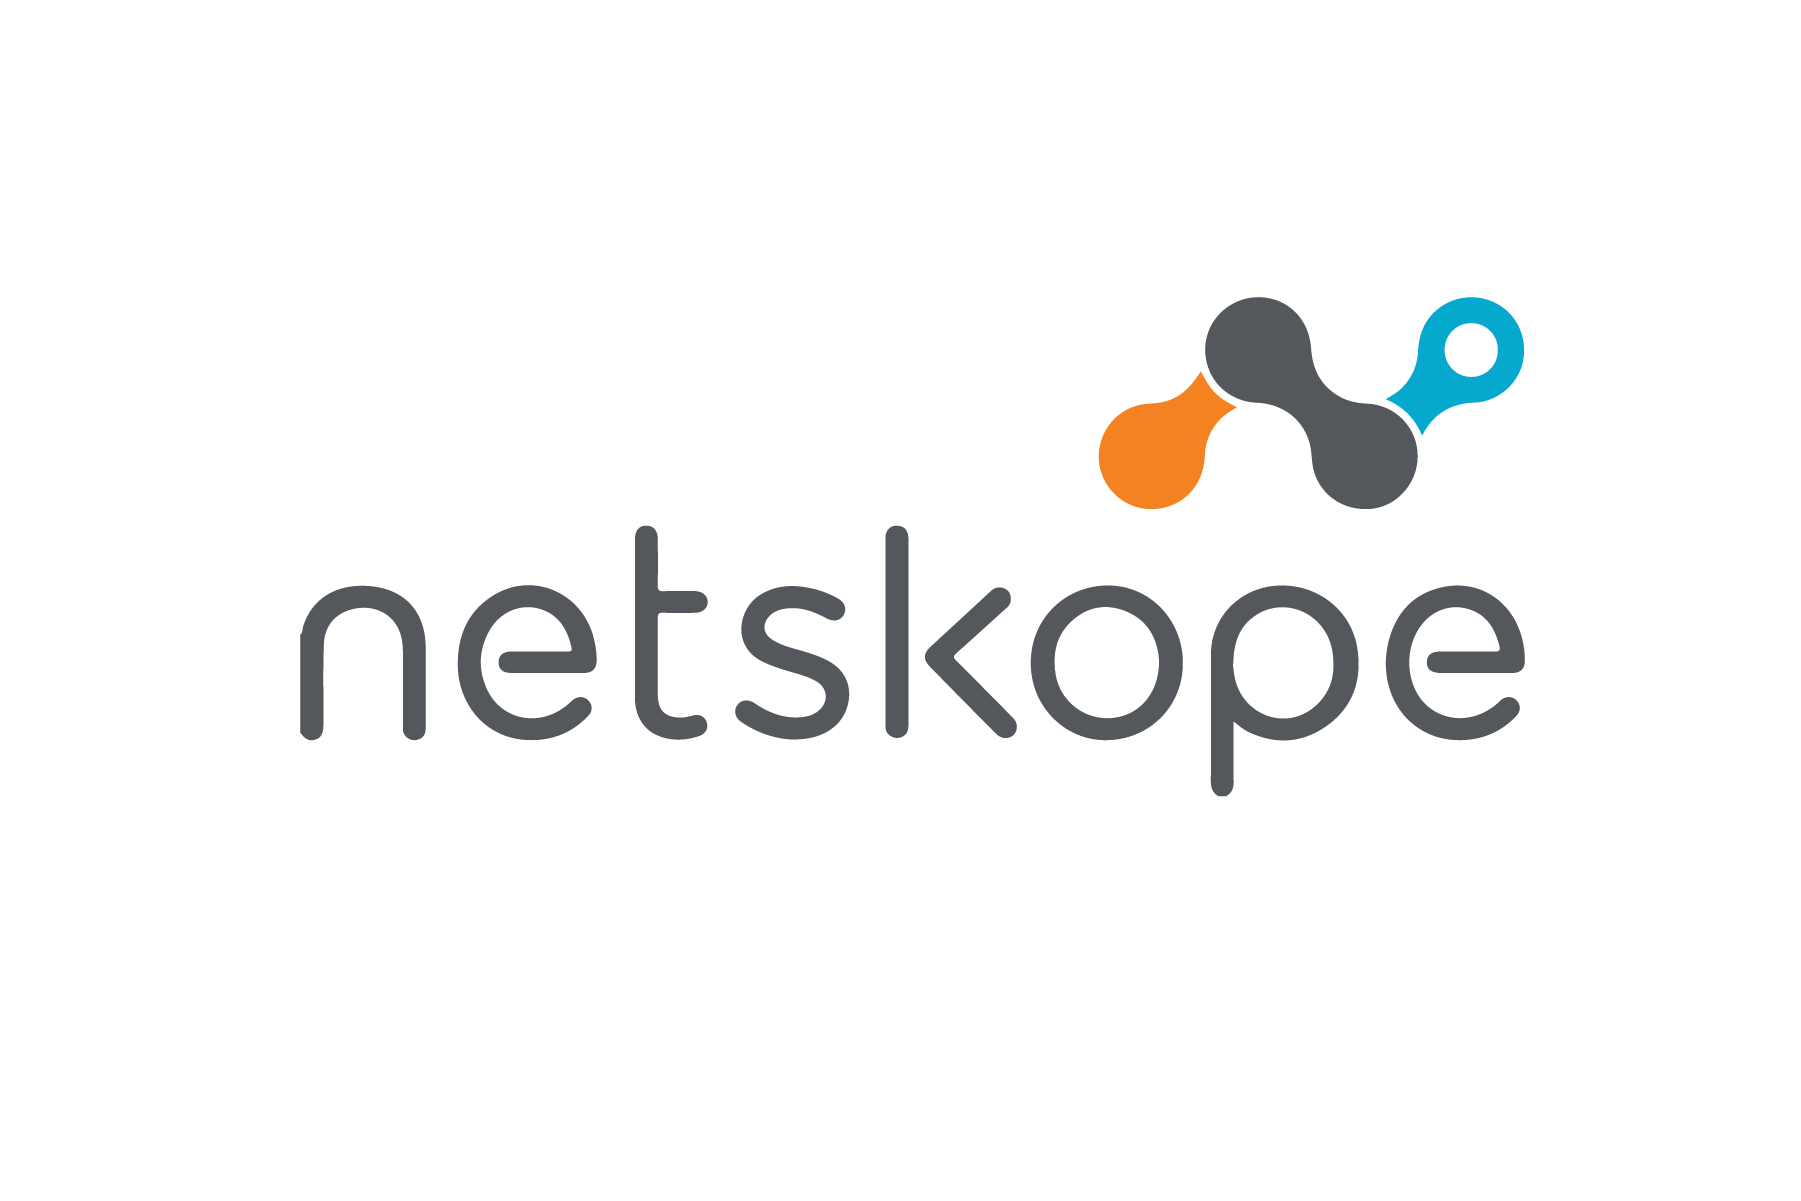 NetSkope